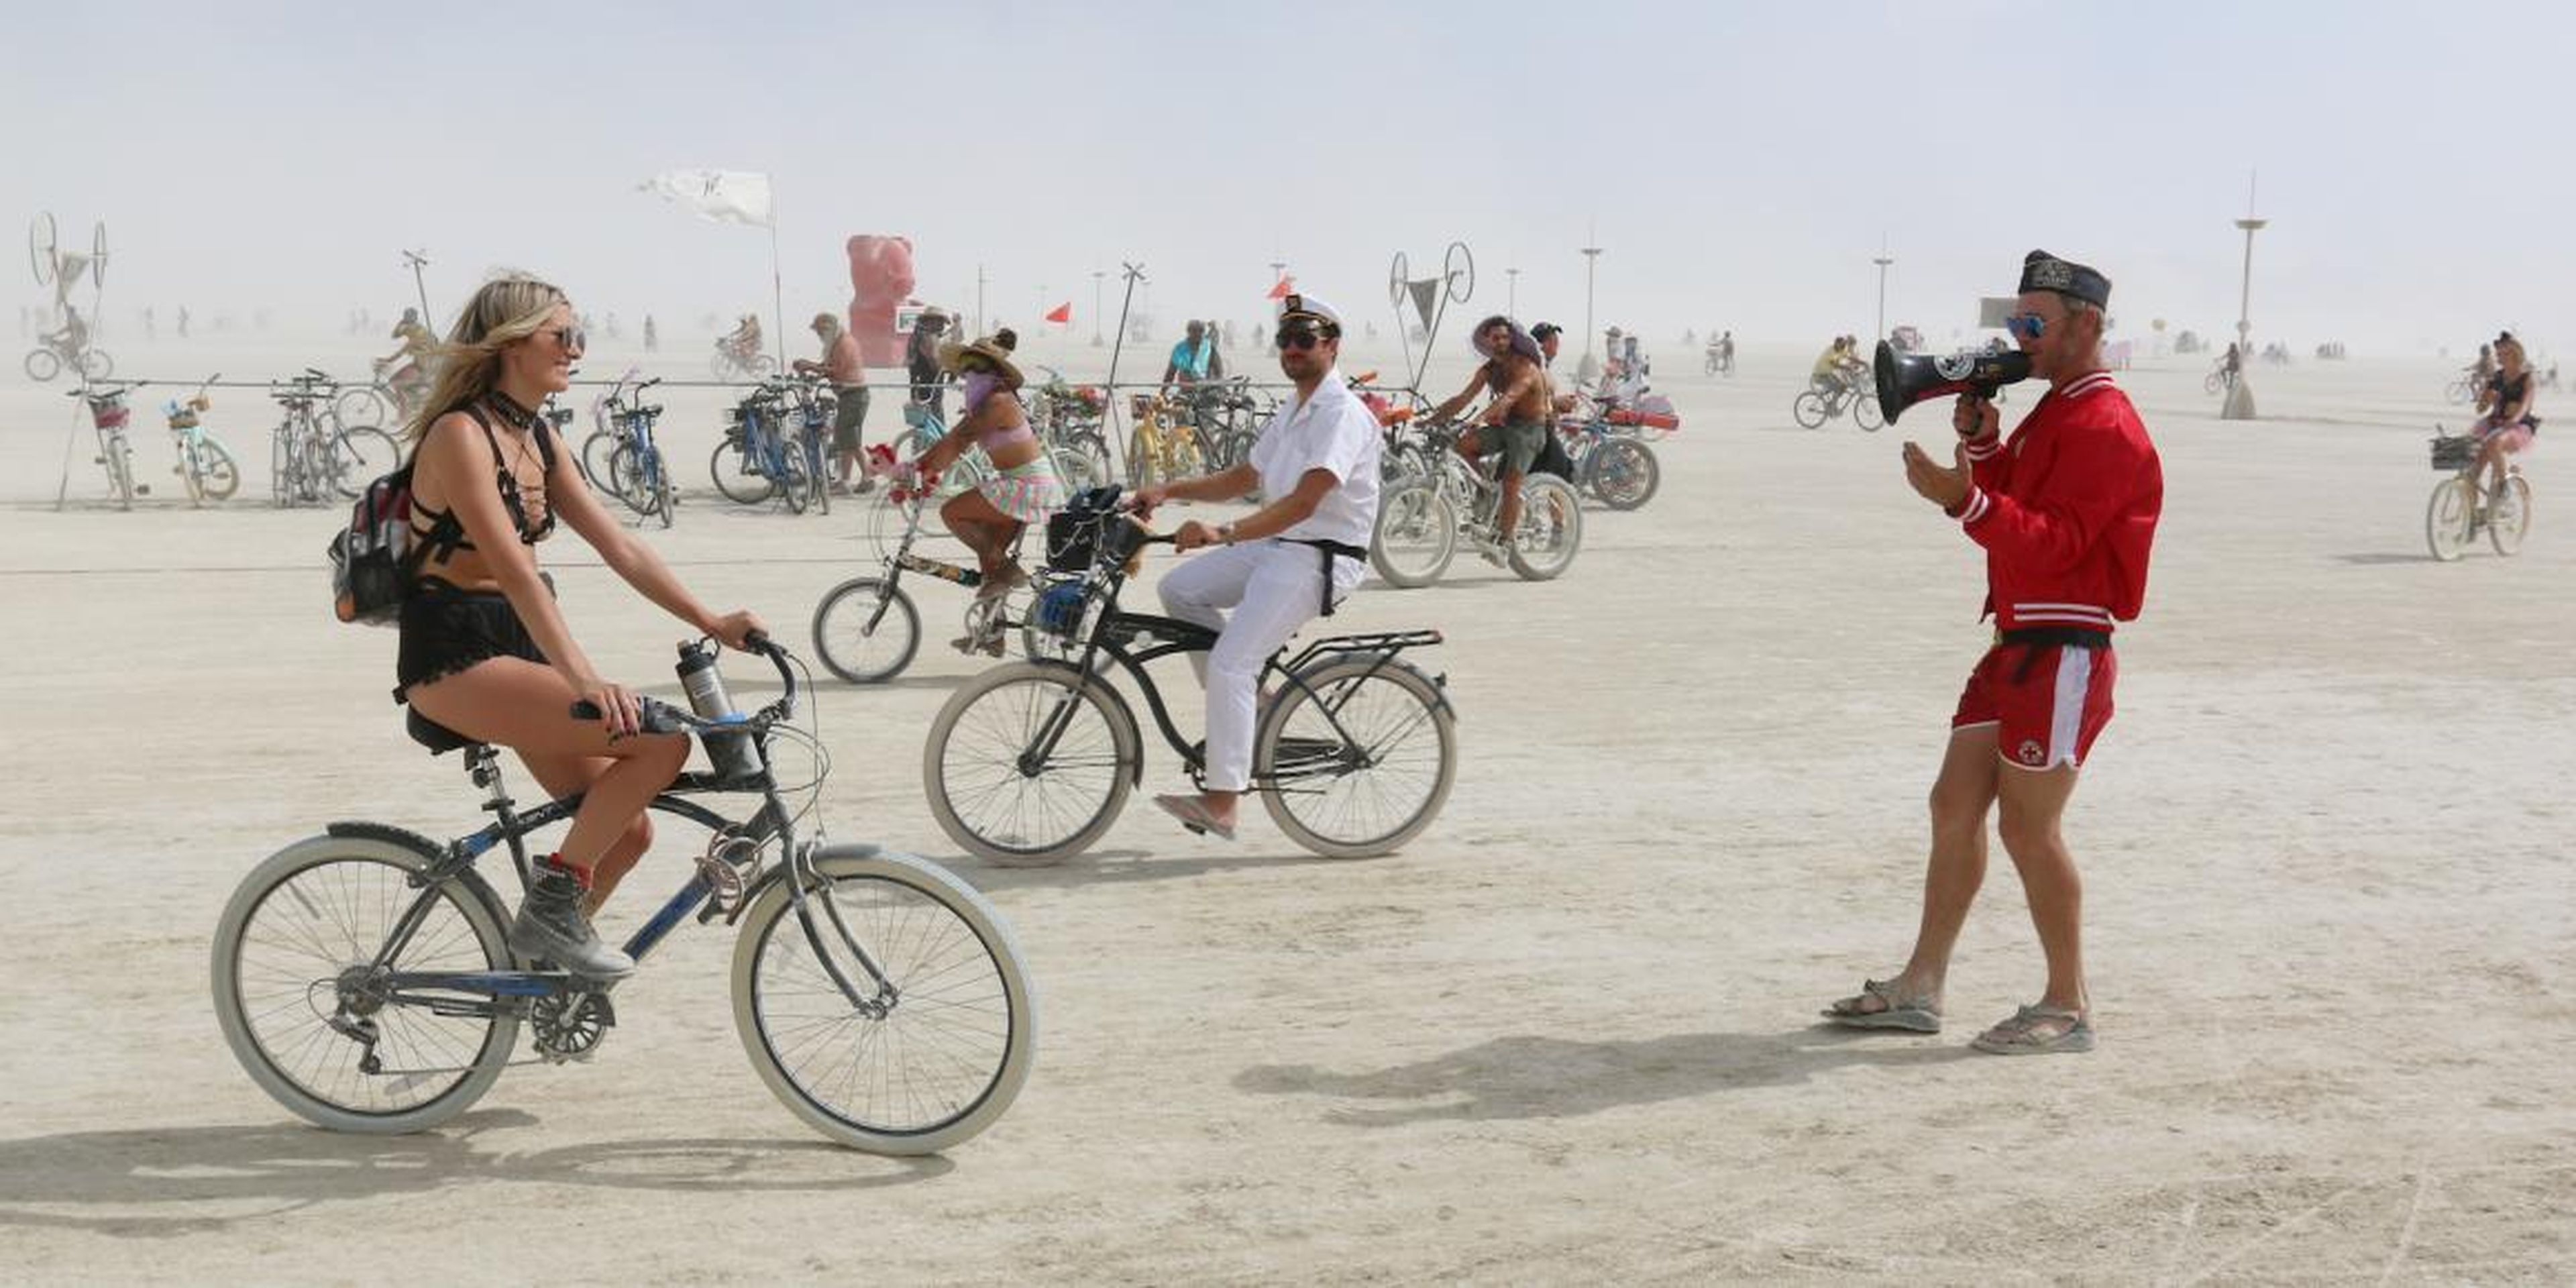 Así es visitar Burning Man, uno de los eventos más salvajes y surrealistas del mundo